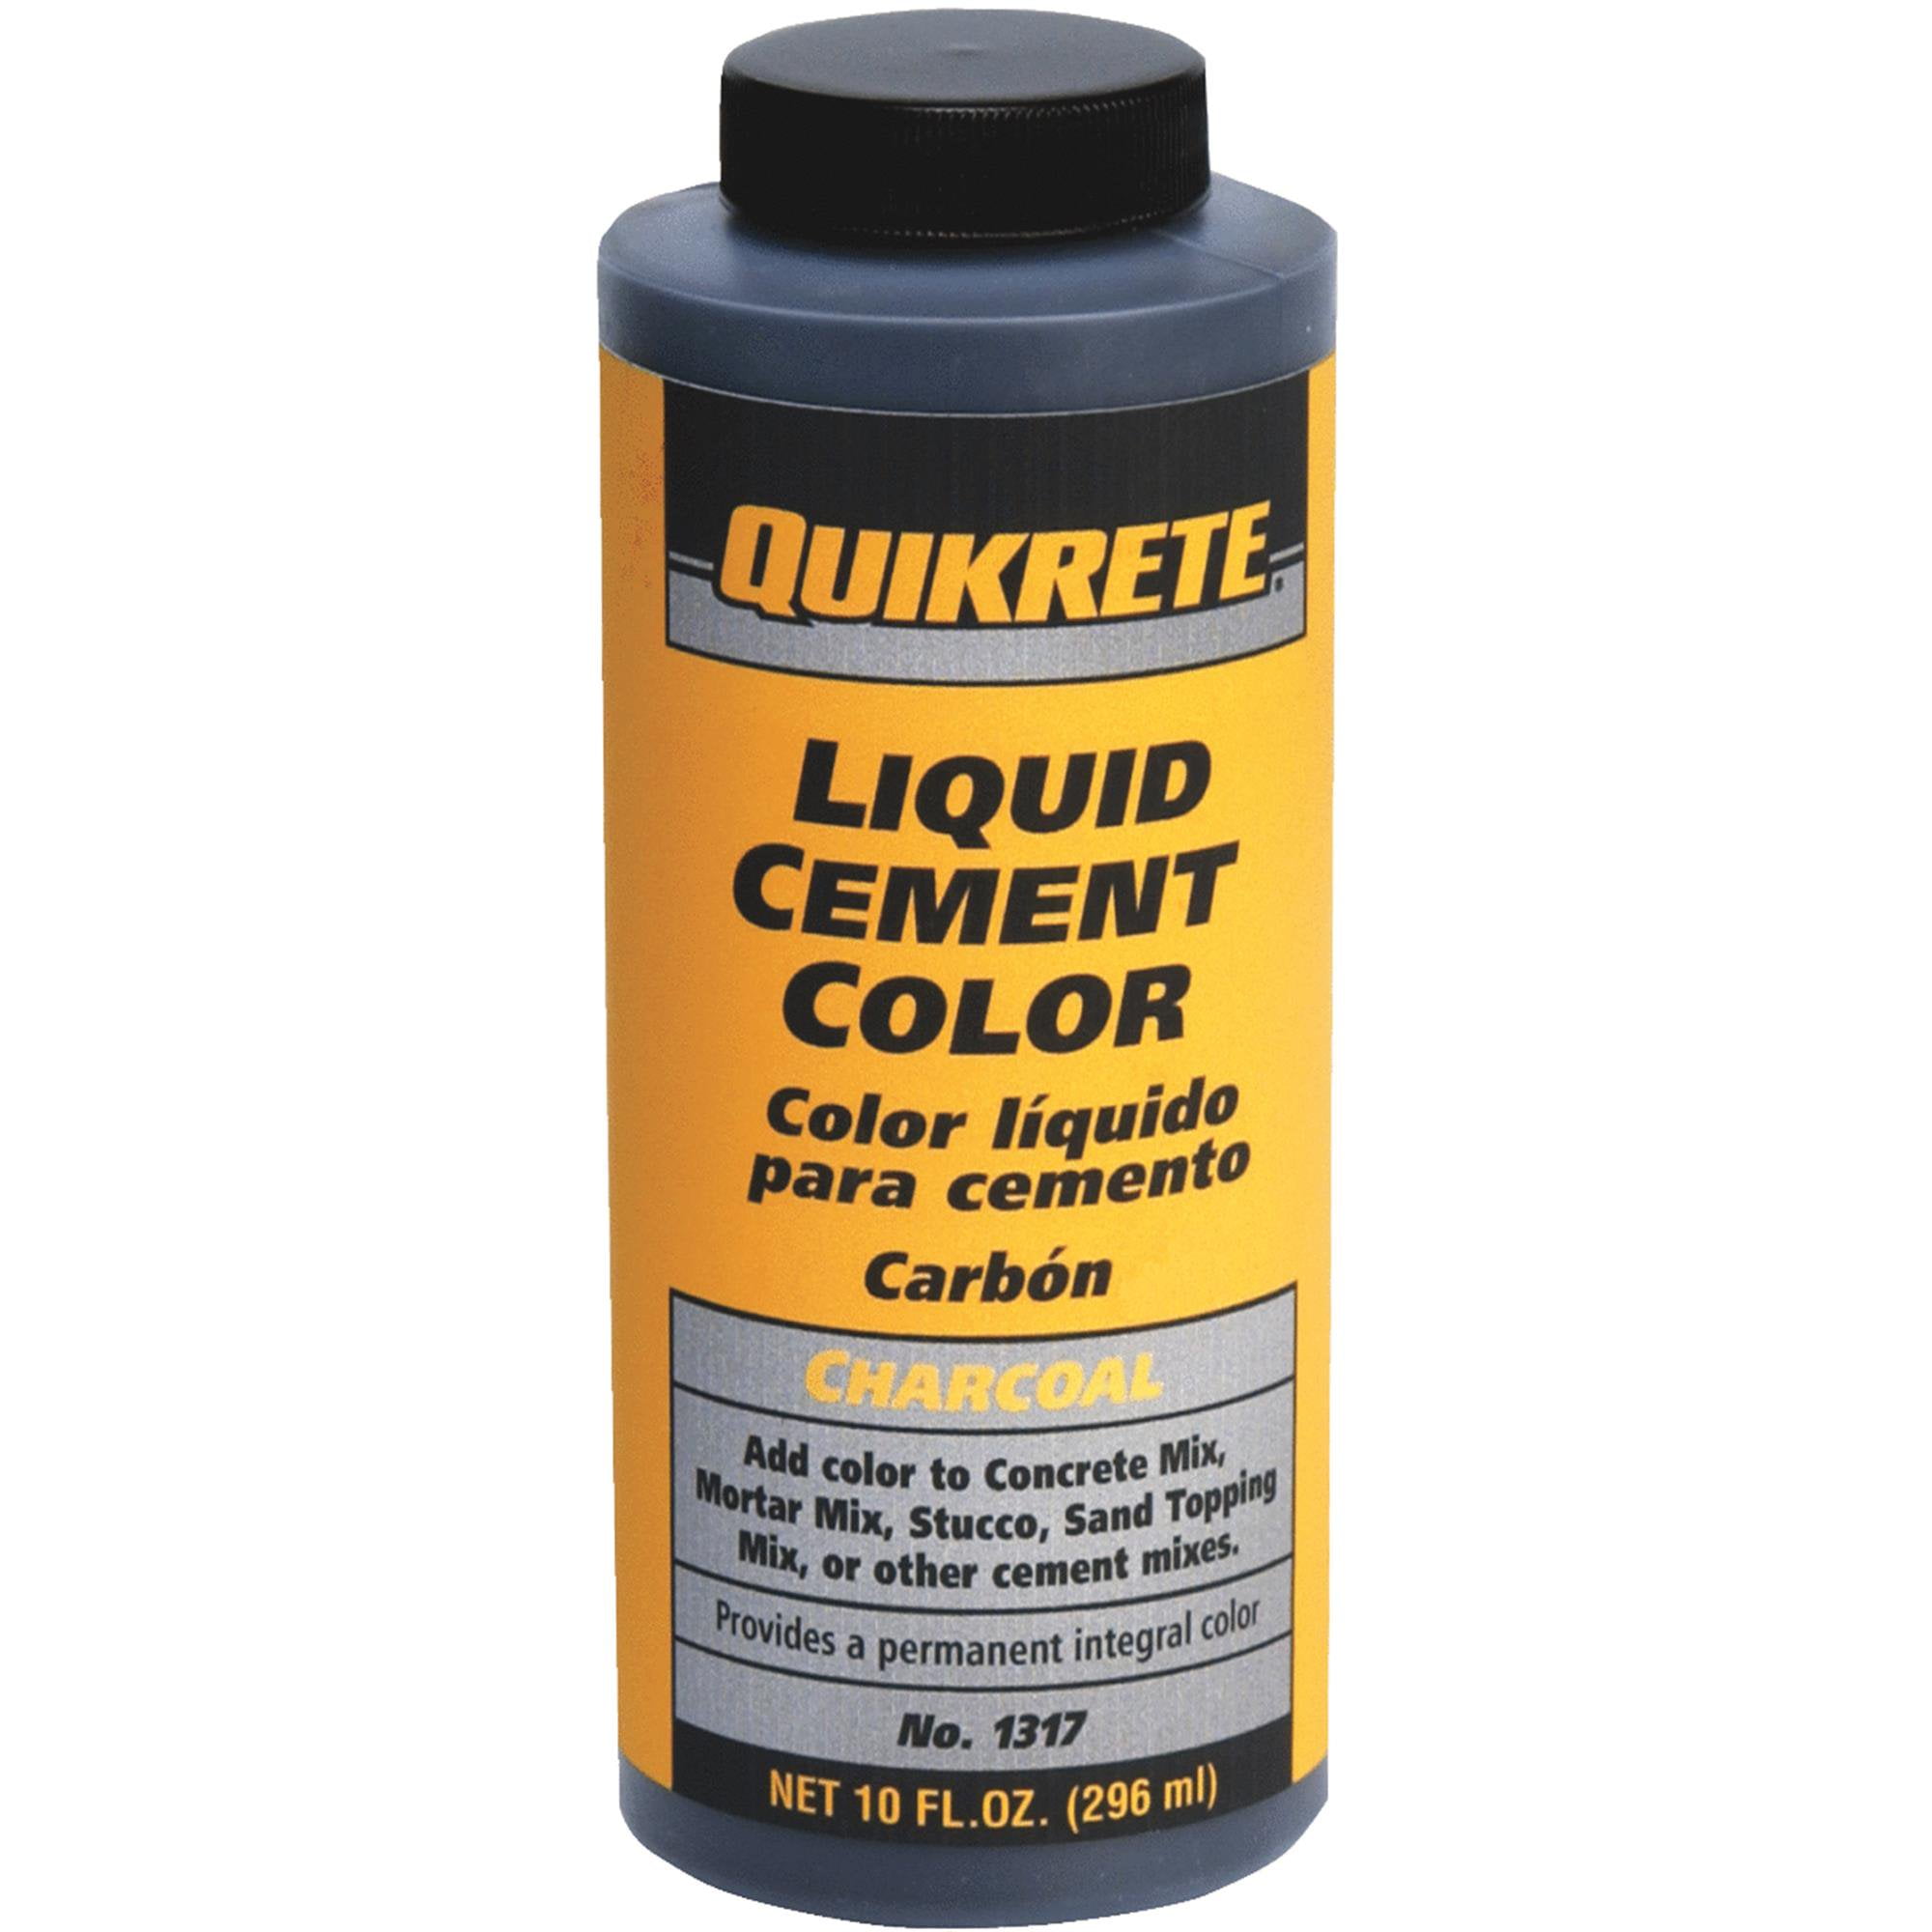 Quikrete Liquid Cement Color - Walmart.com - Walmart.com